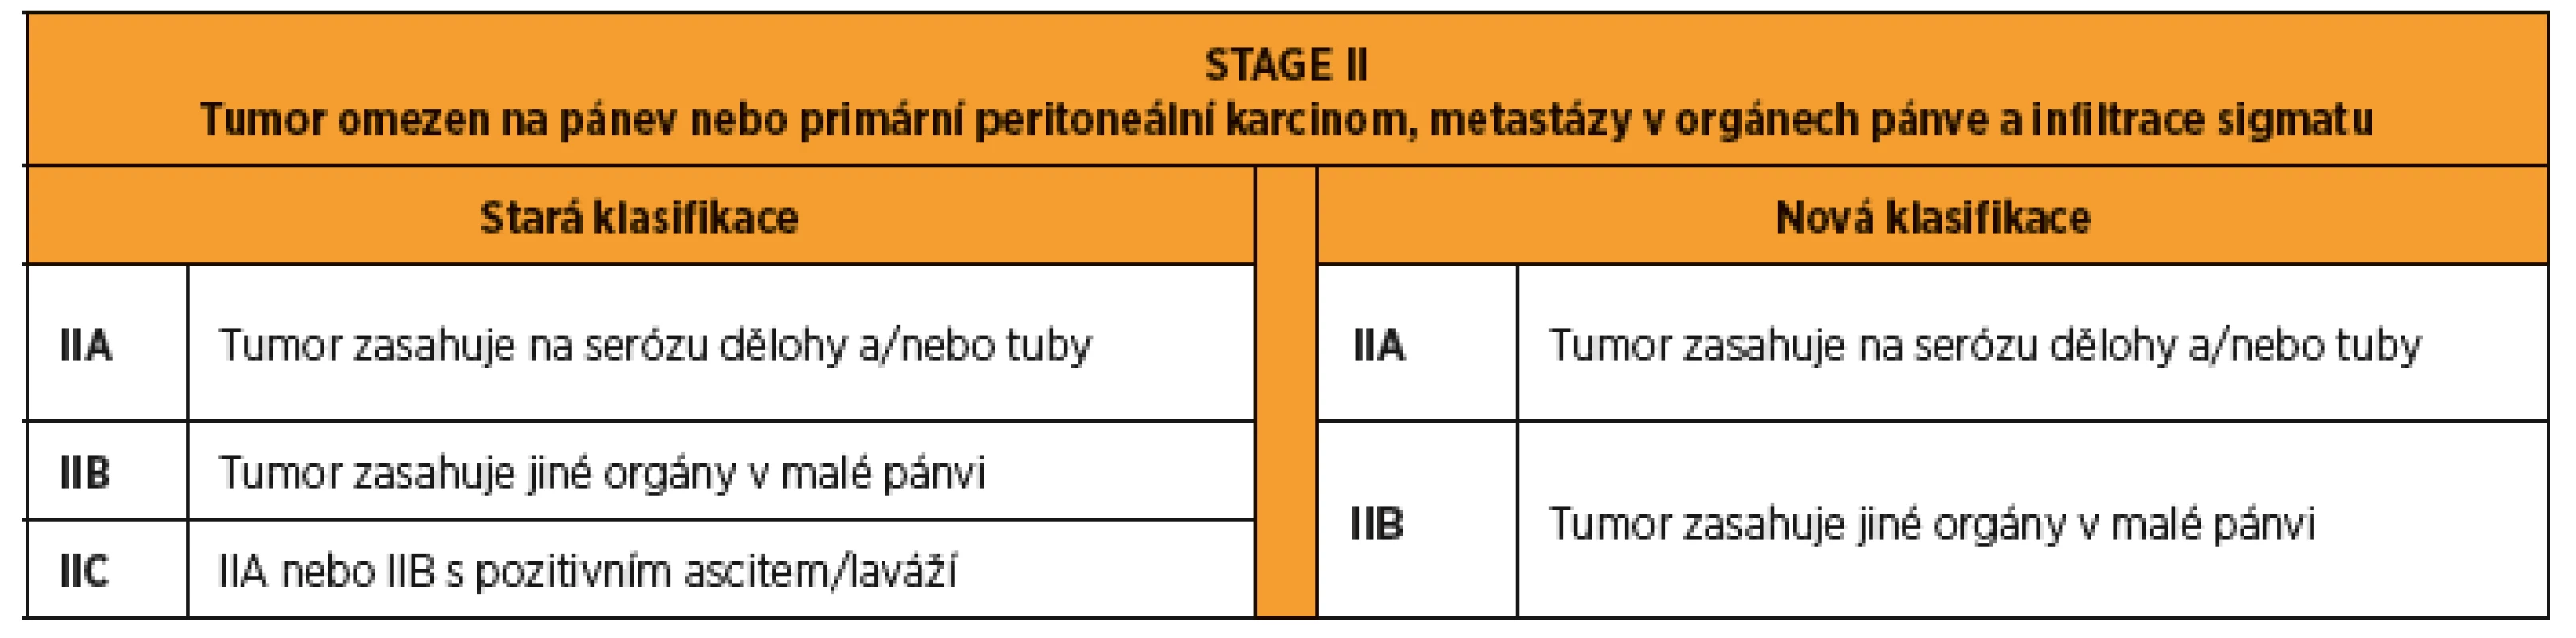 FIGO 2014 stage II karcinomu ovaria, tuby a peritonea. Rozdíly mezi starou a novou klasifikací.